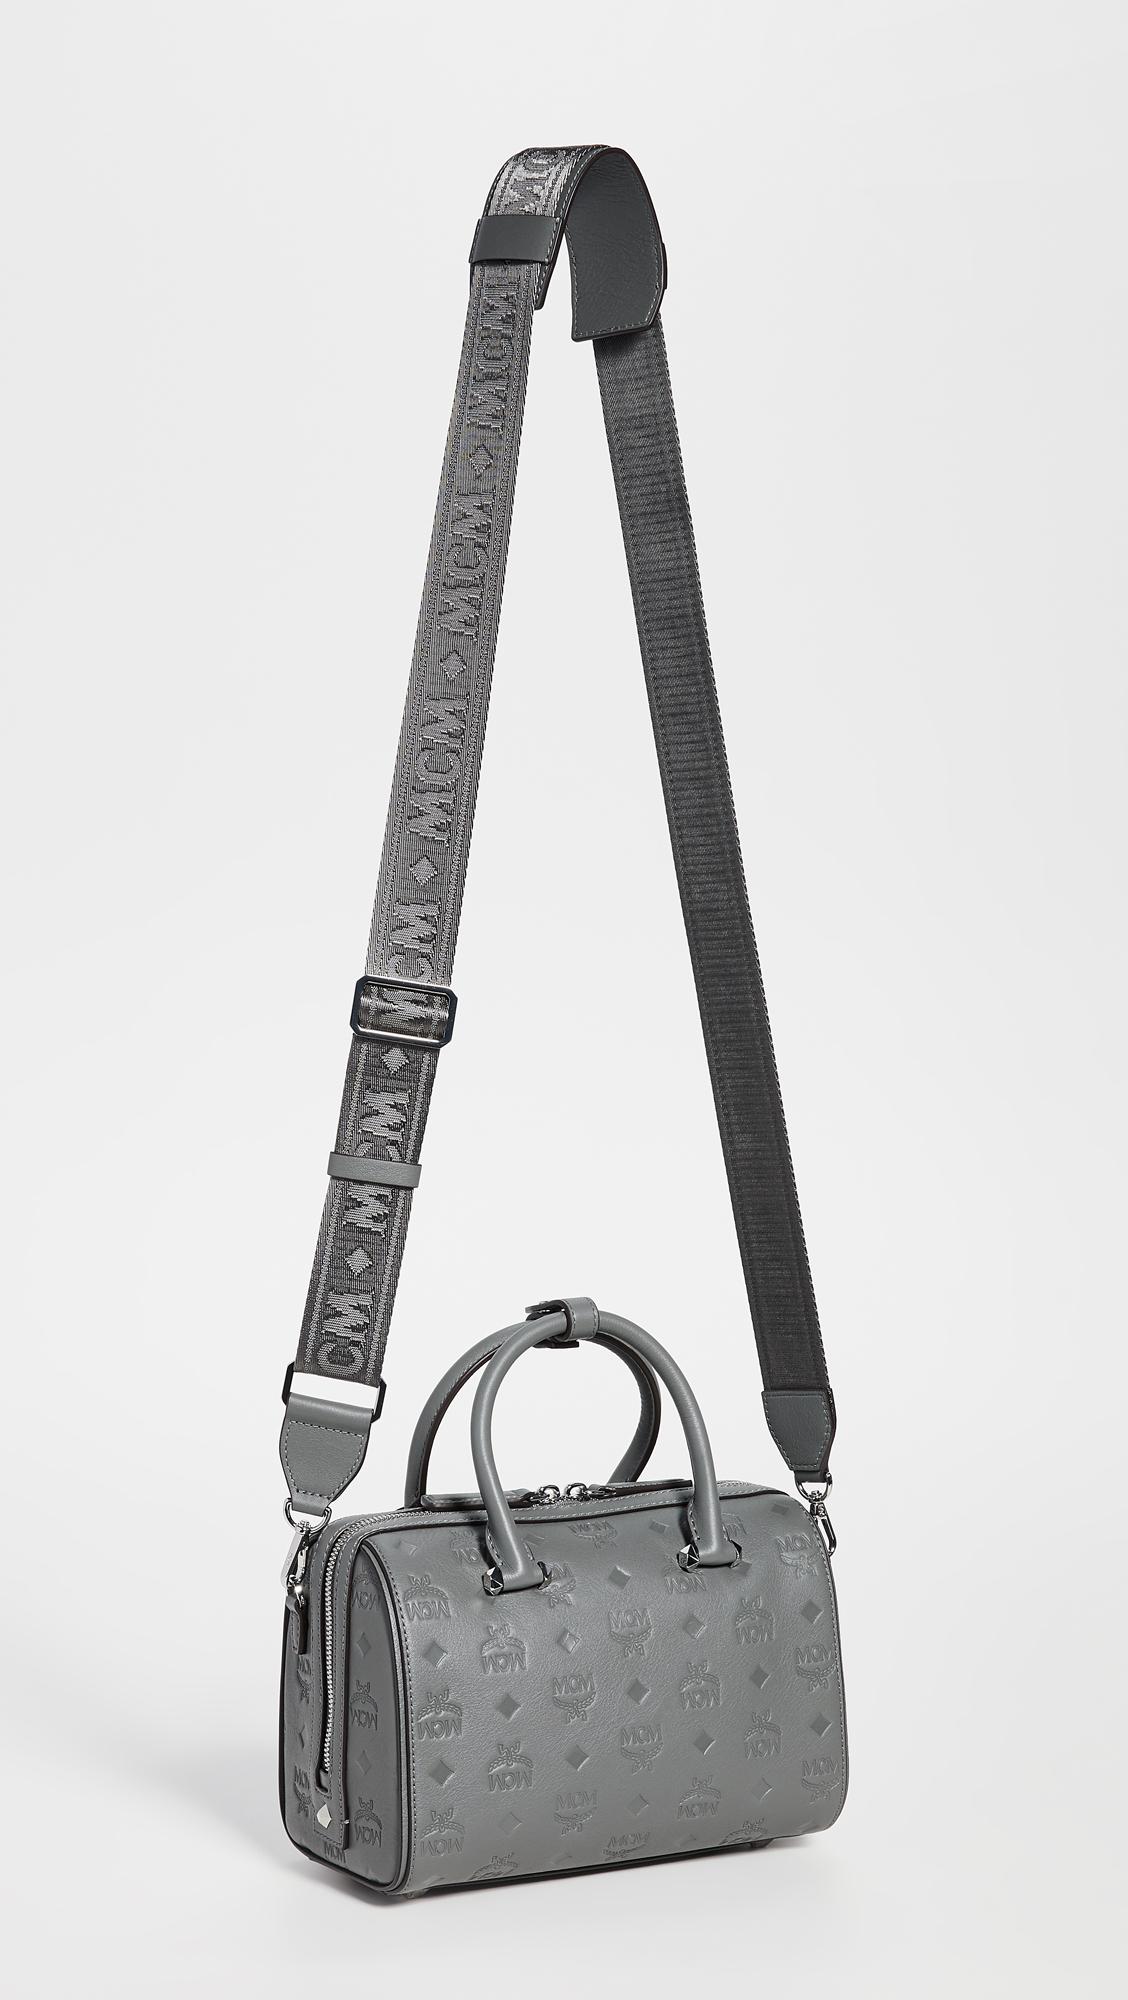 mcm essential boston bag in monogram leather